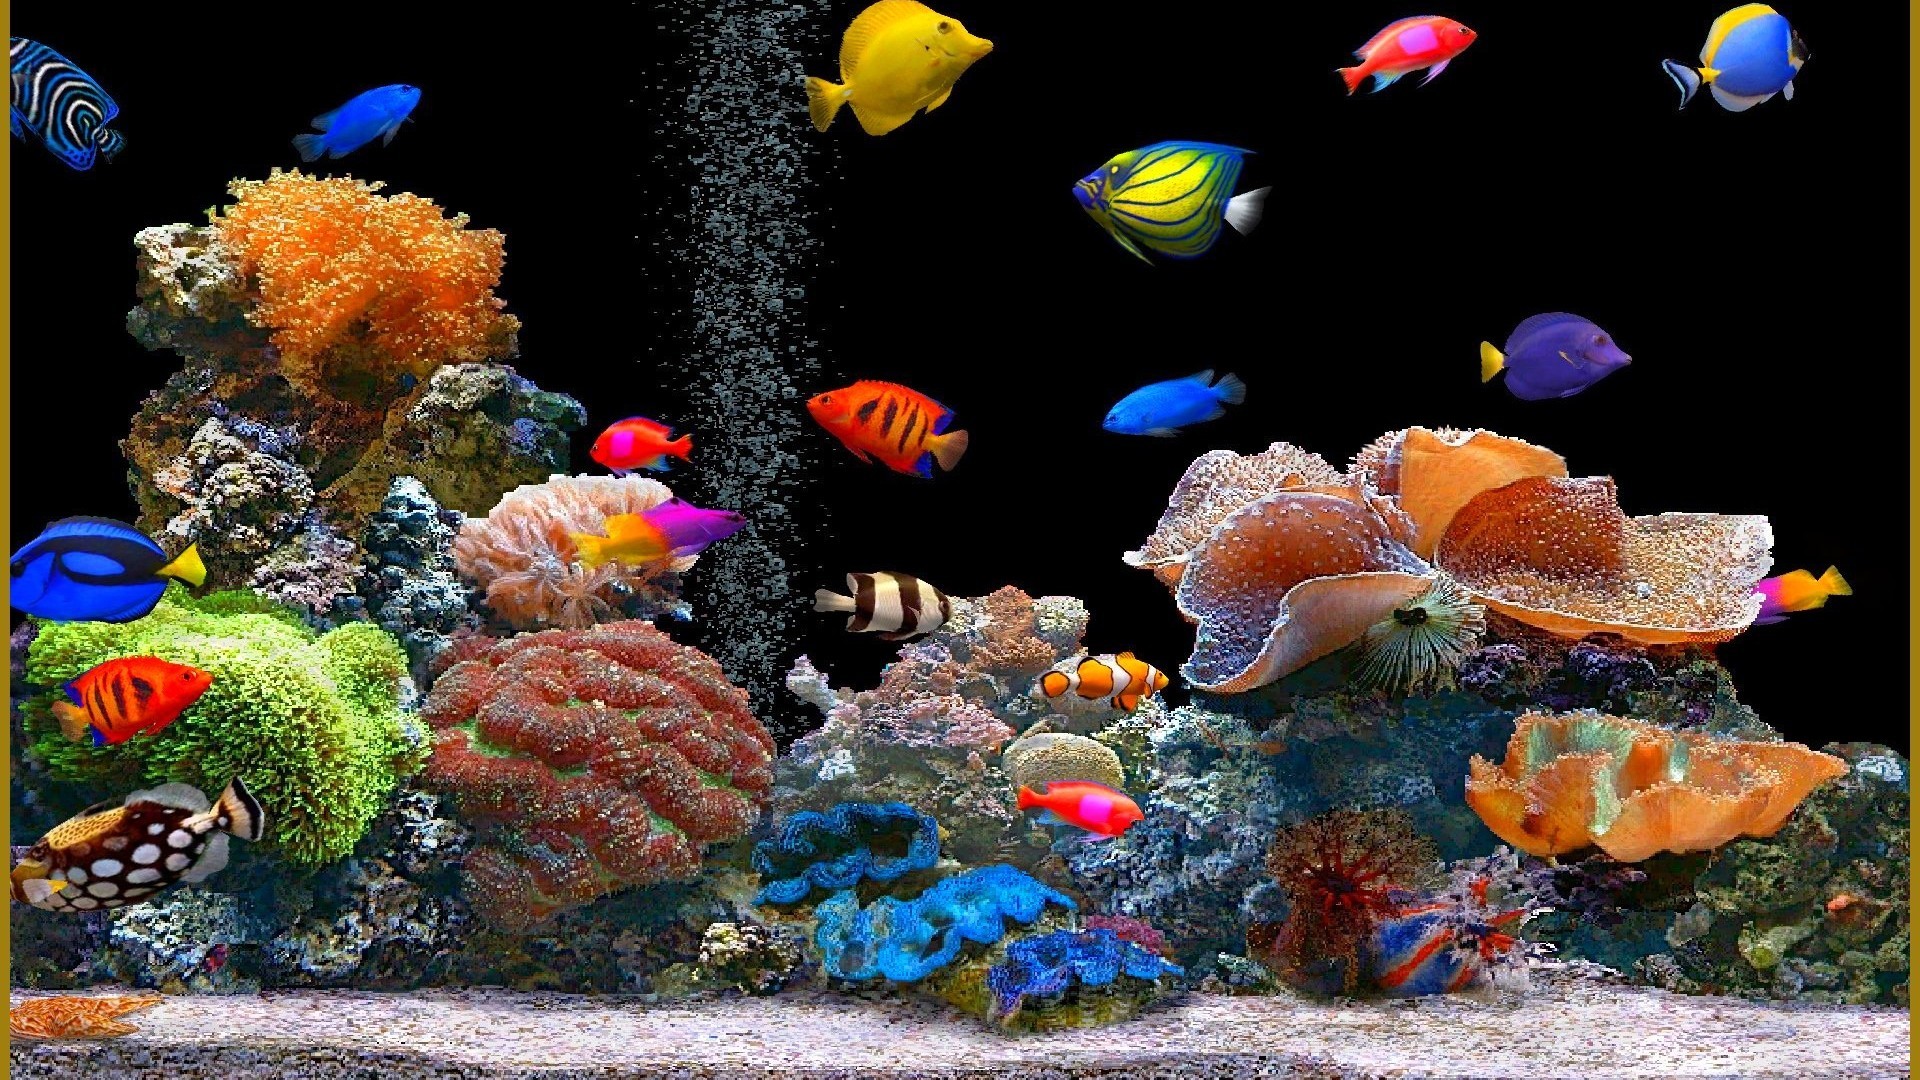 Moving Aquarium Wallpaper (49+ images)